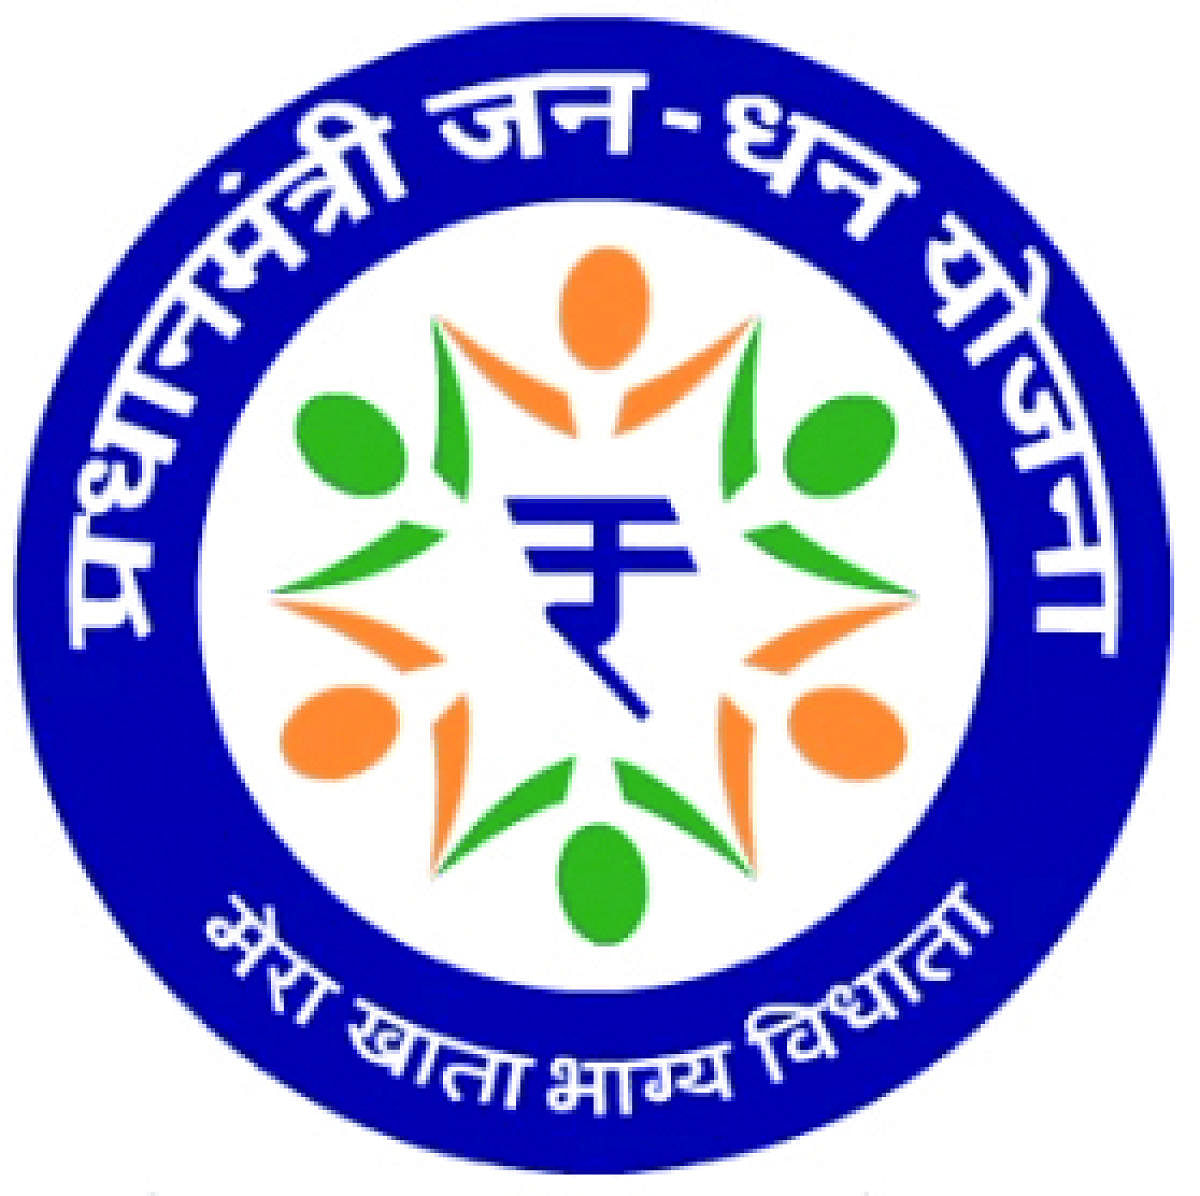 Pradhan Mantri Jan Dhan Yojna logo (DH Photo)